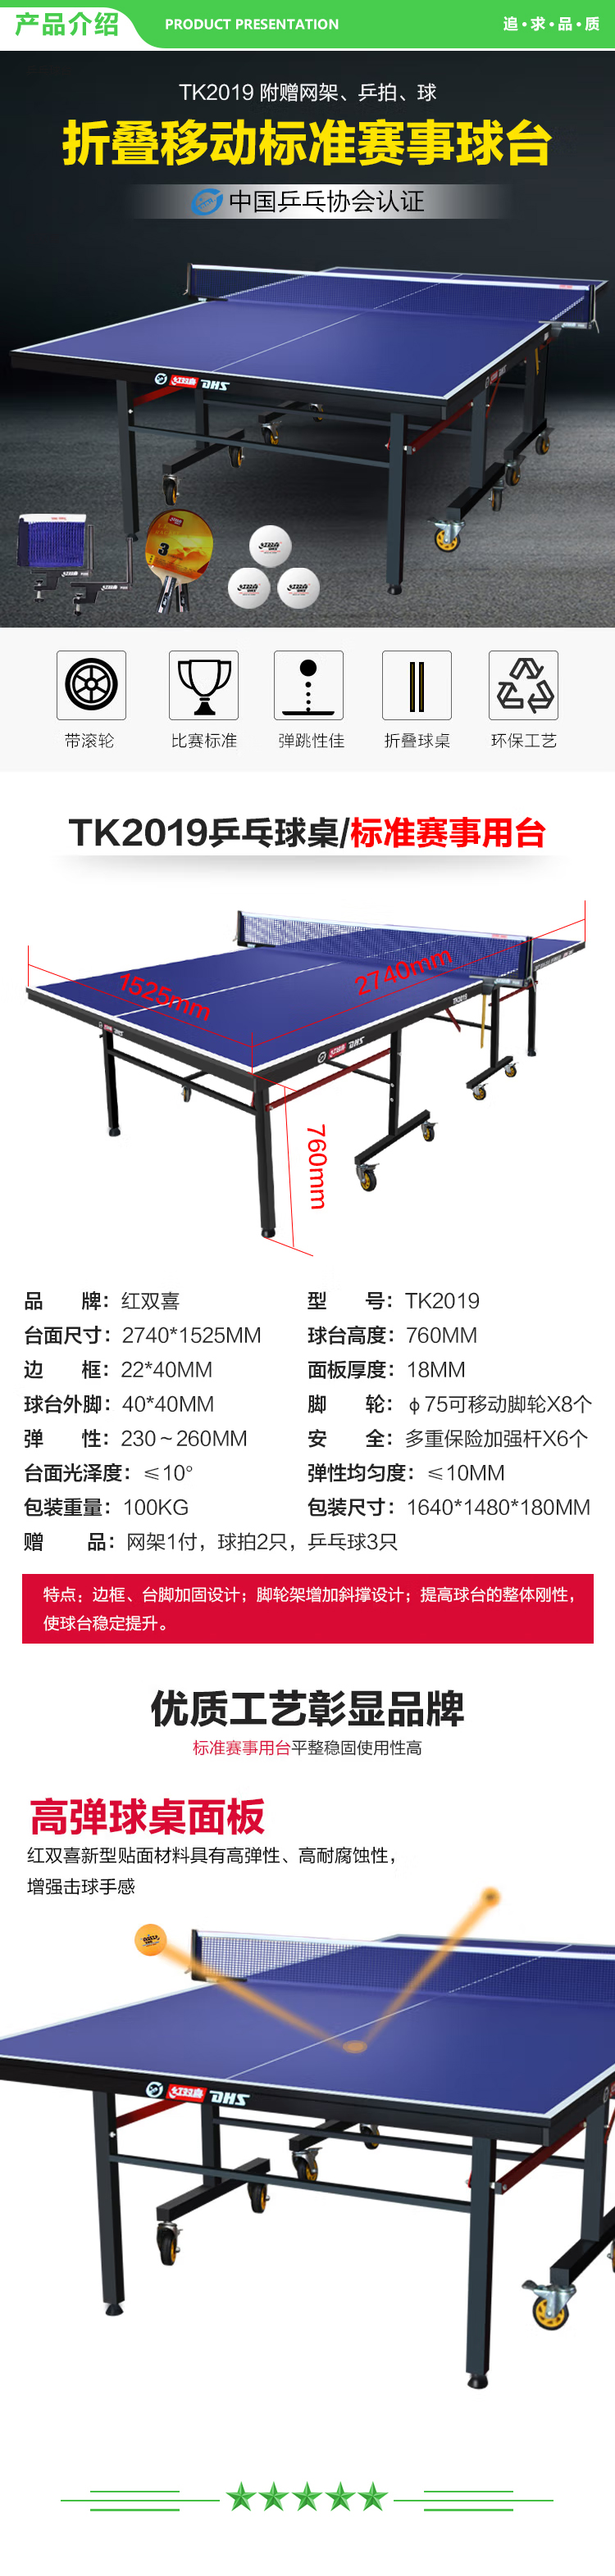 红双喜 DHS TK2019 专业移动折叠乒乓球桌标准比赛乒乓球台(含一付乒乓球拍、乒乓球、网架) .jpg